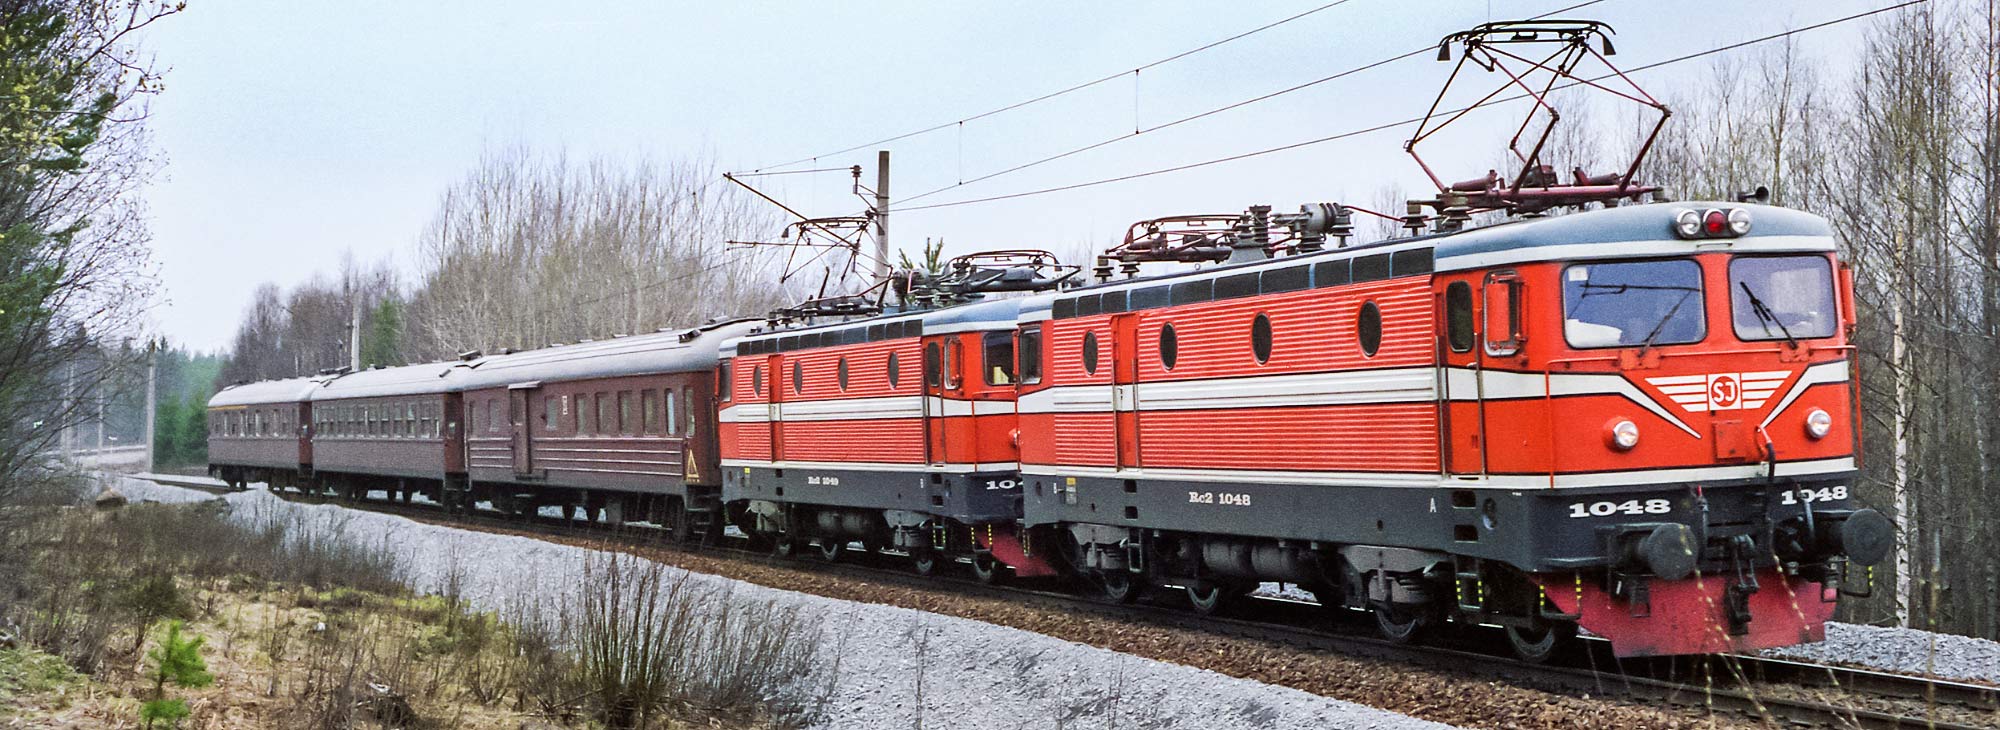 Rc2-lok med persontåg utanför Sandviken 1989. Foto Markus Tellerup.